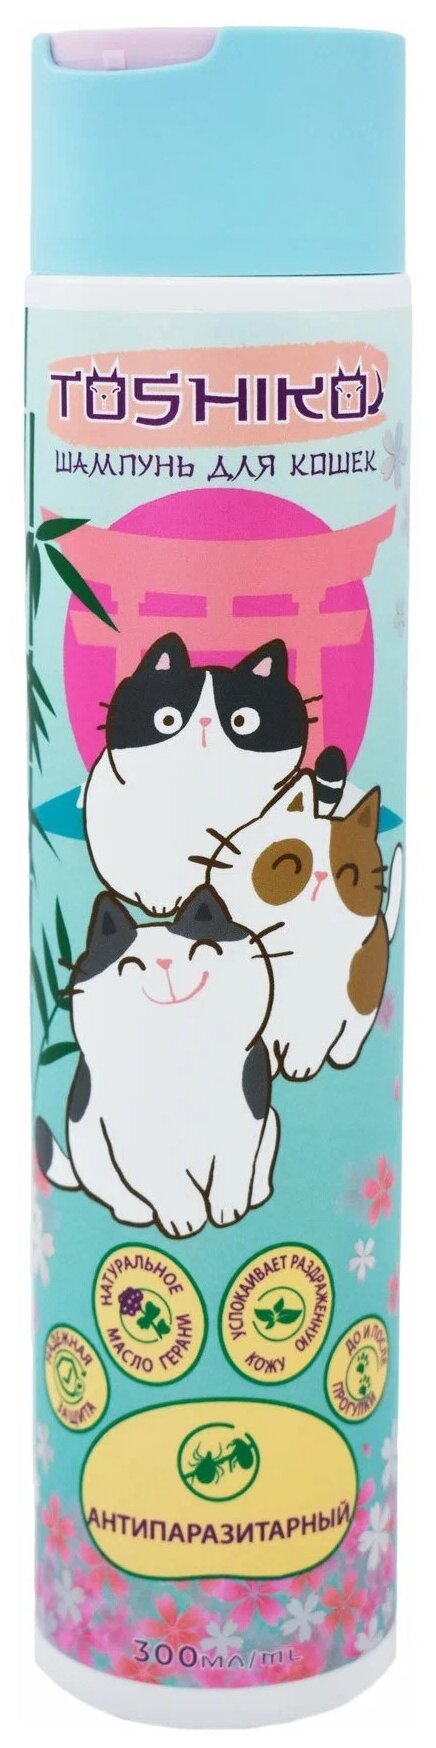 Toshiko шампунь от блох и клещей Антипаразитарный для кошек